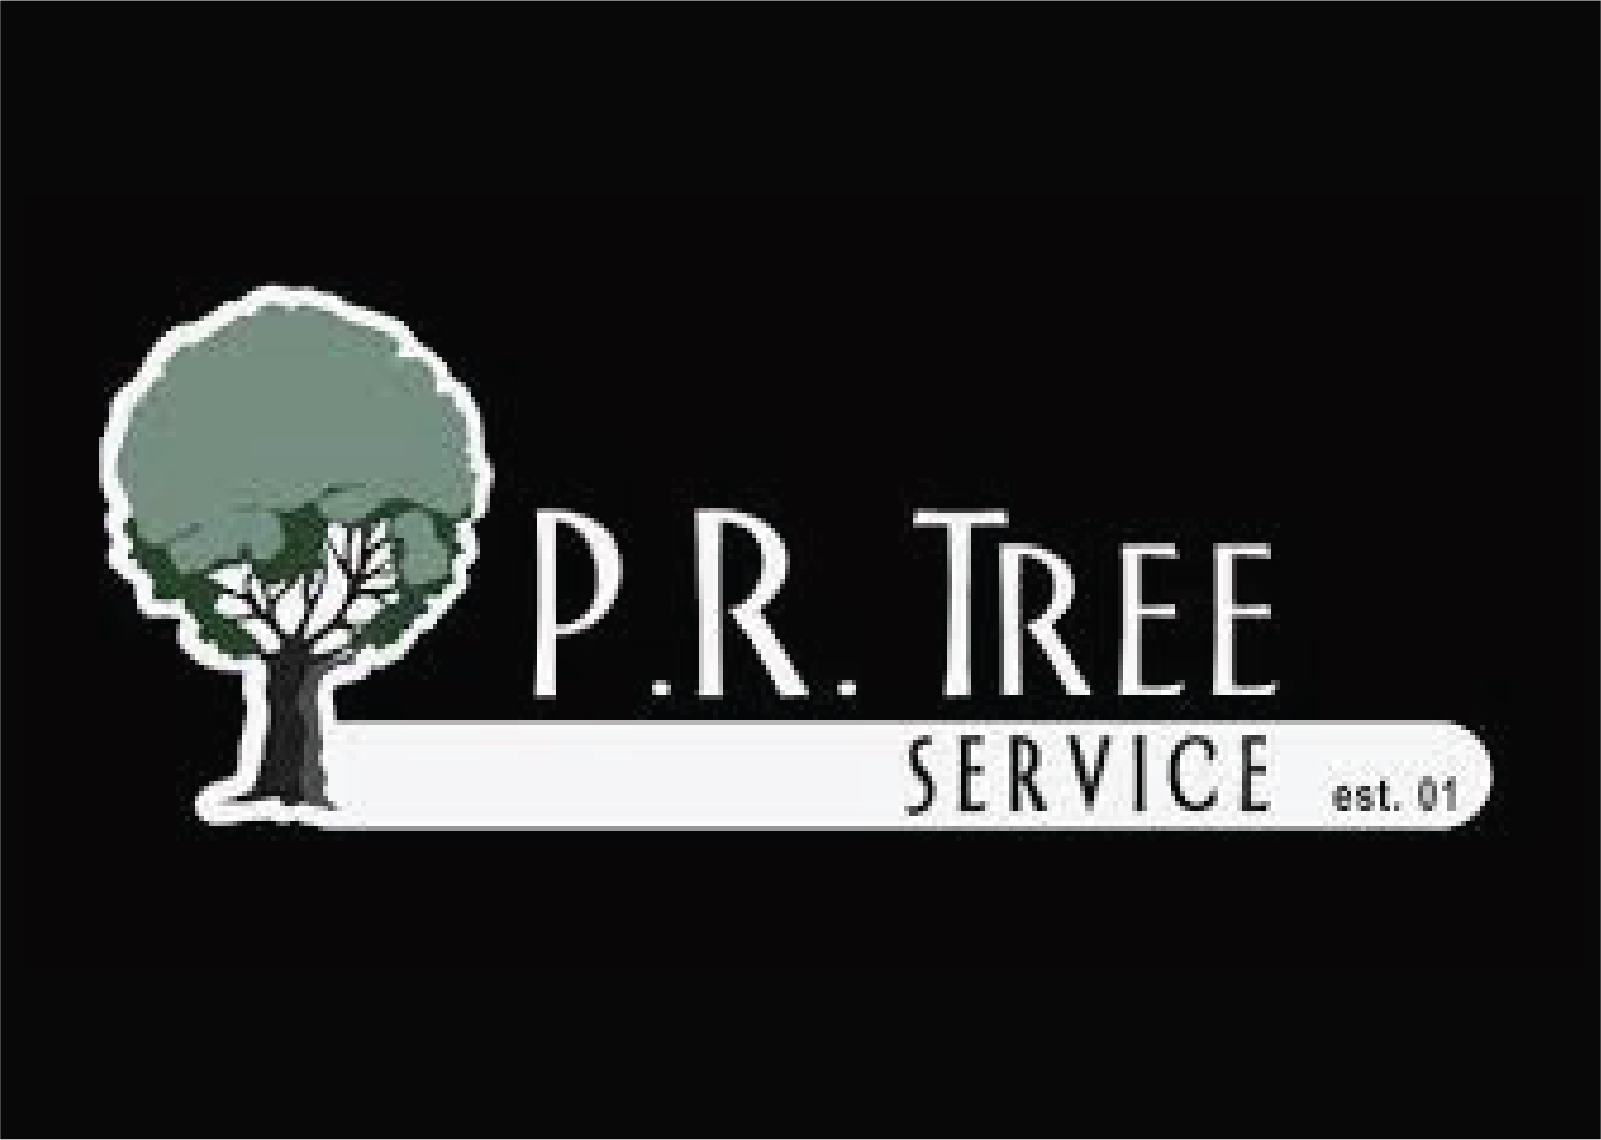 PR Tree